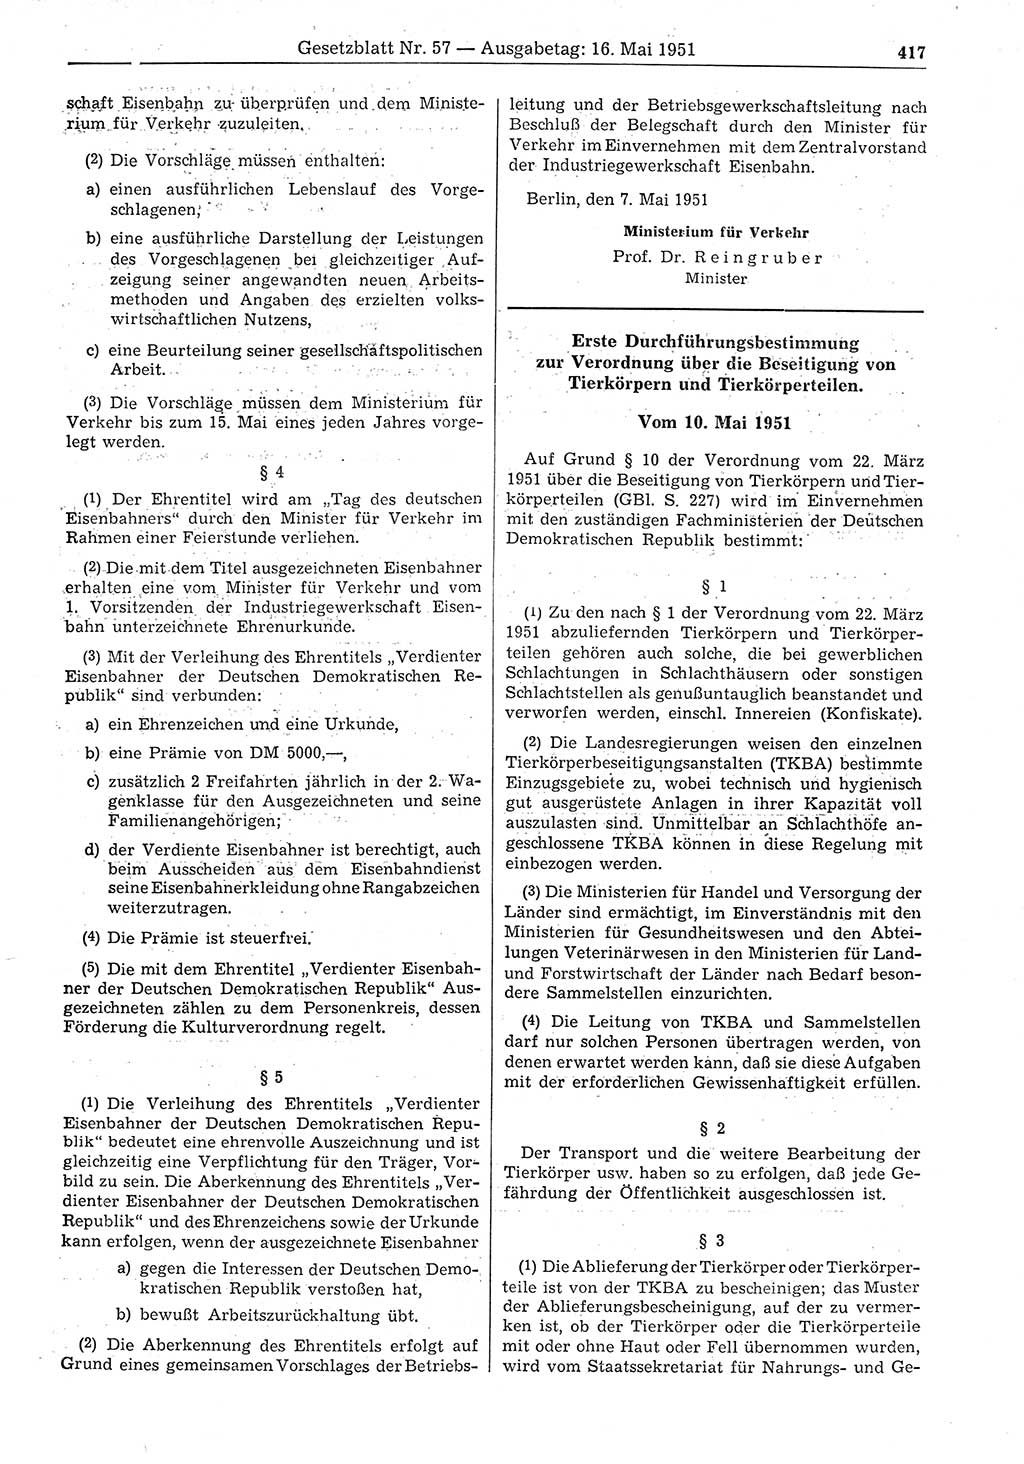 Gesetzblatt (GBl.) der Deutschen Demokratischen Republik (DDR) 1951, Seite 417 (GBl. DDR 1951, S. 417)